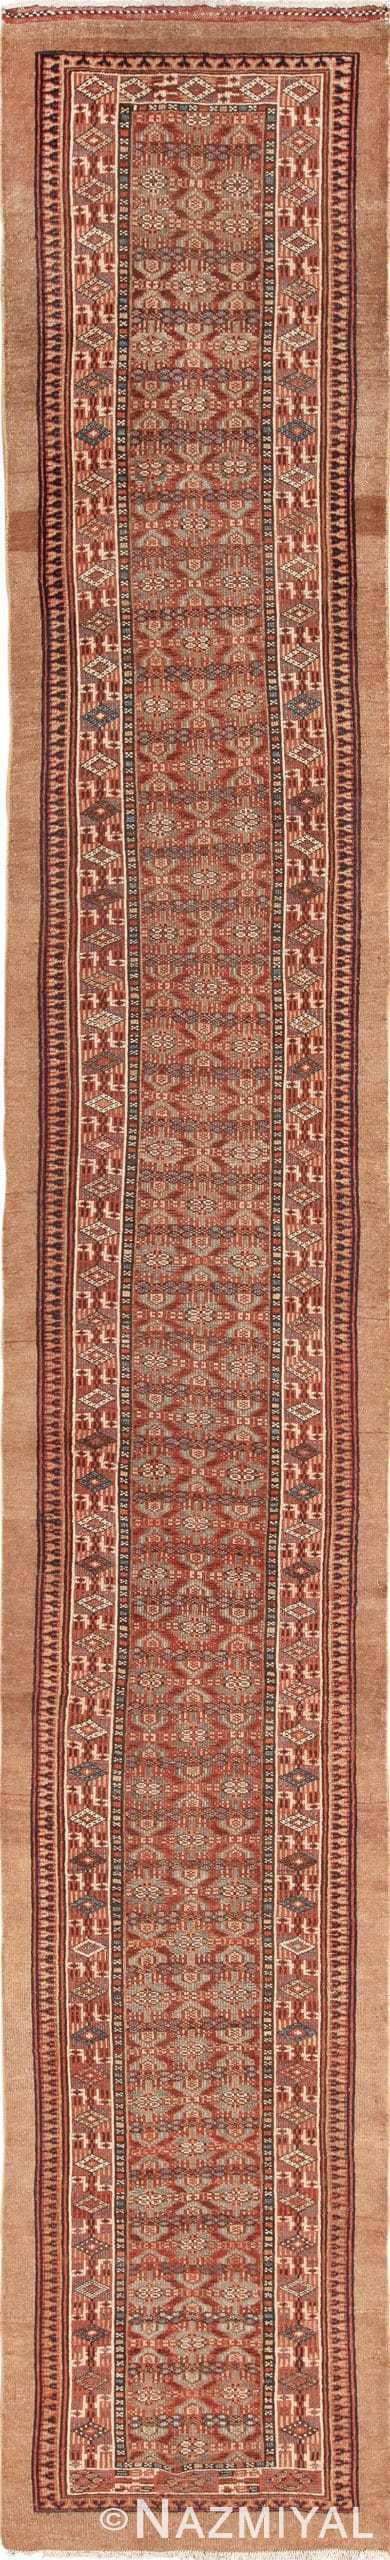 Tribal Long and Narrow Antique Persian Serab Runner Rug 49720 - Nazmiyal